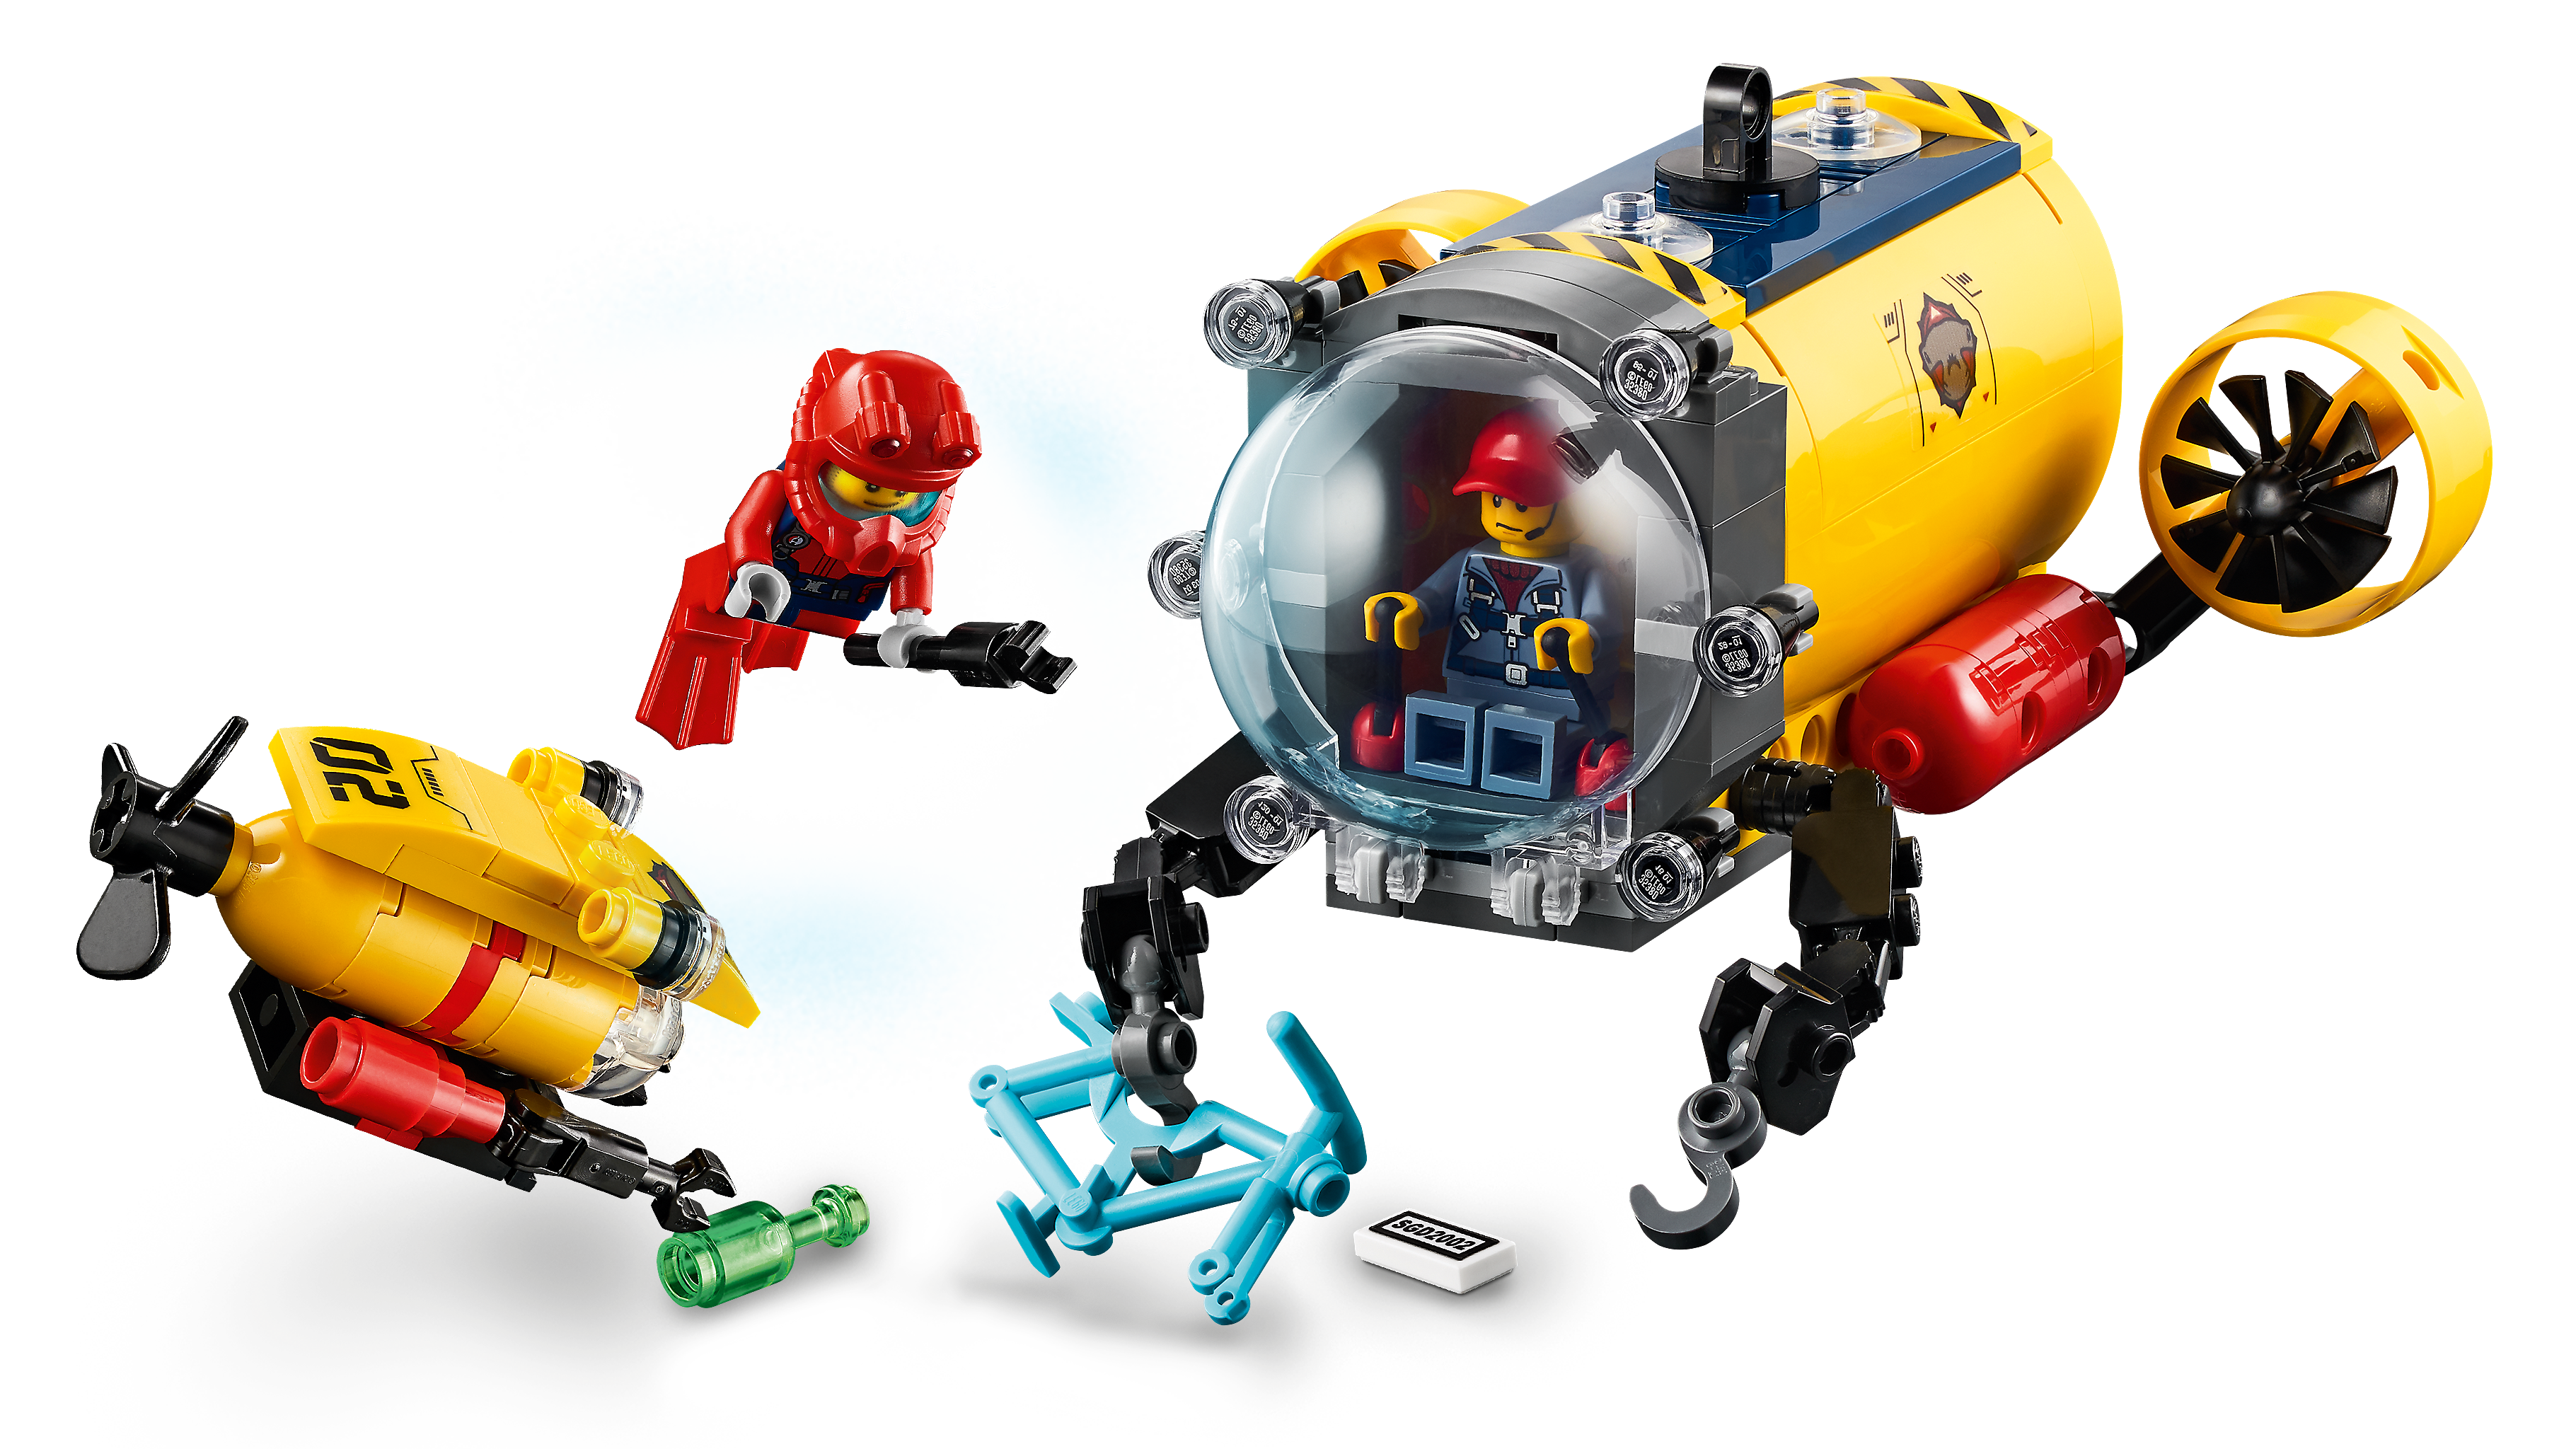 Lego City Ocean Exploration Base Playset 60265 – Veux Toys Shop